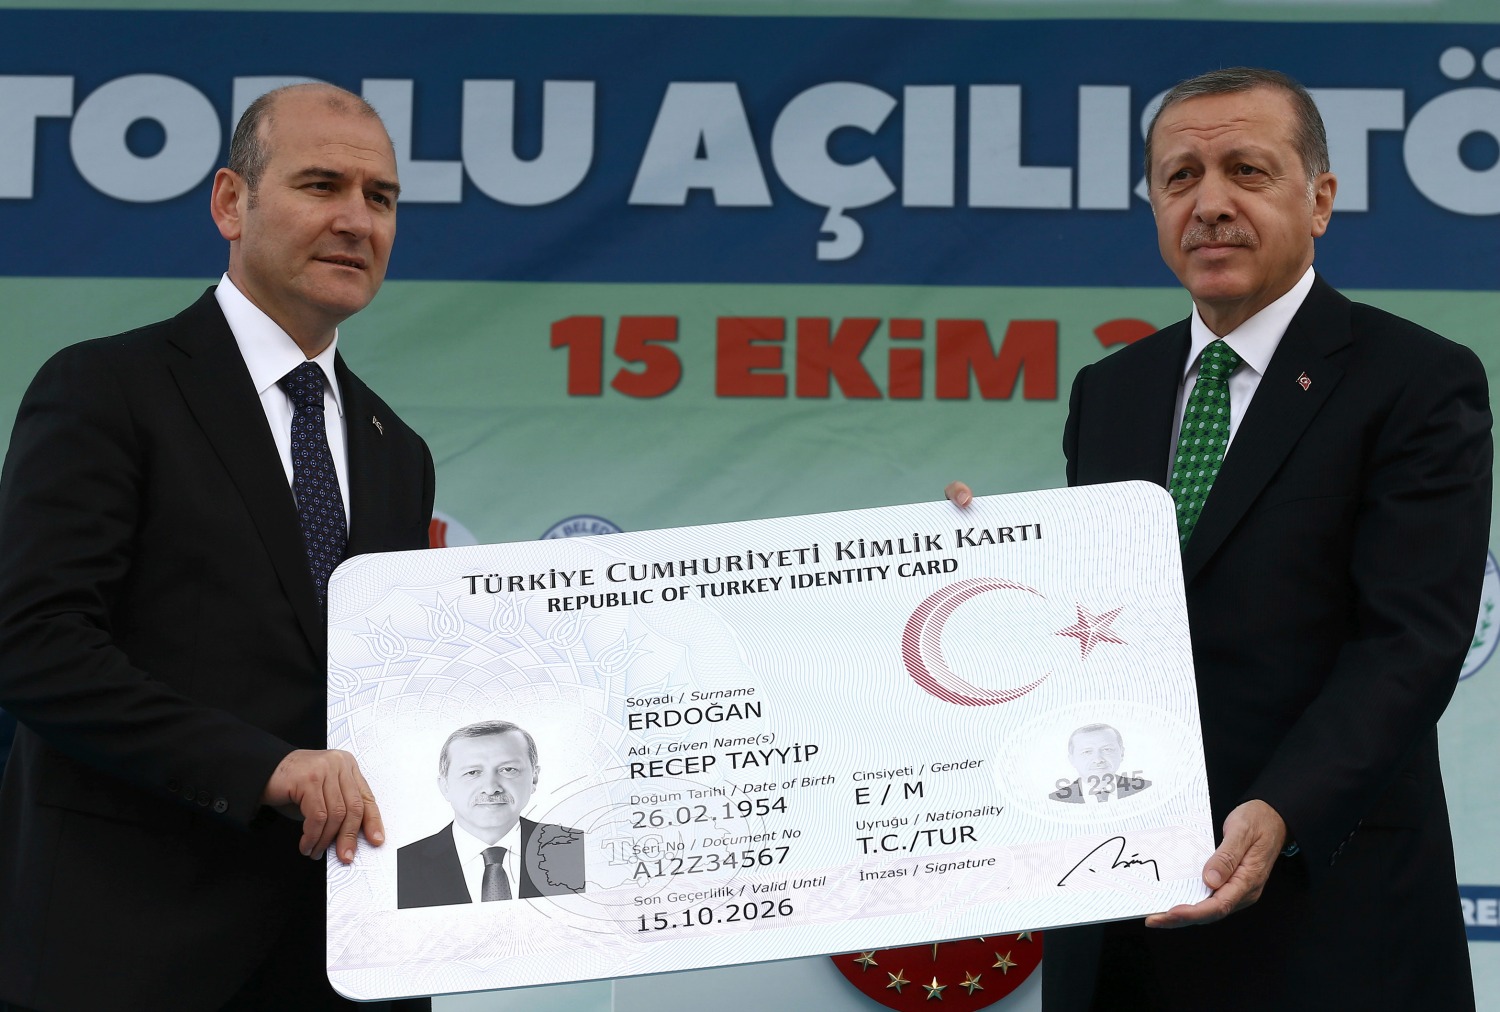 El gobierno turco promete someter a referéndum los poderes de Erdogan